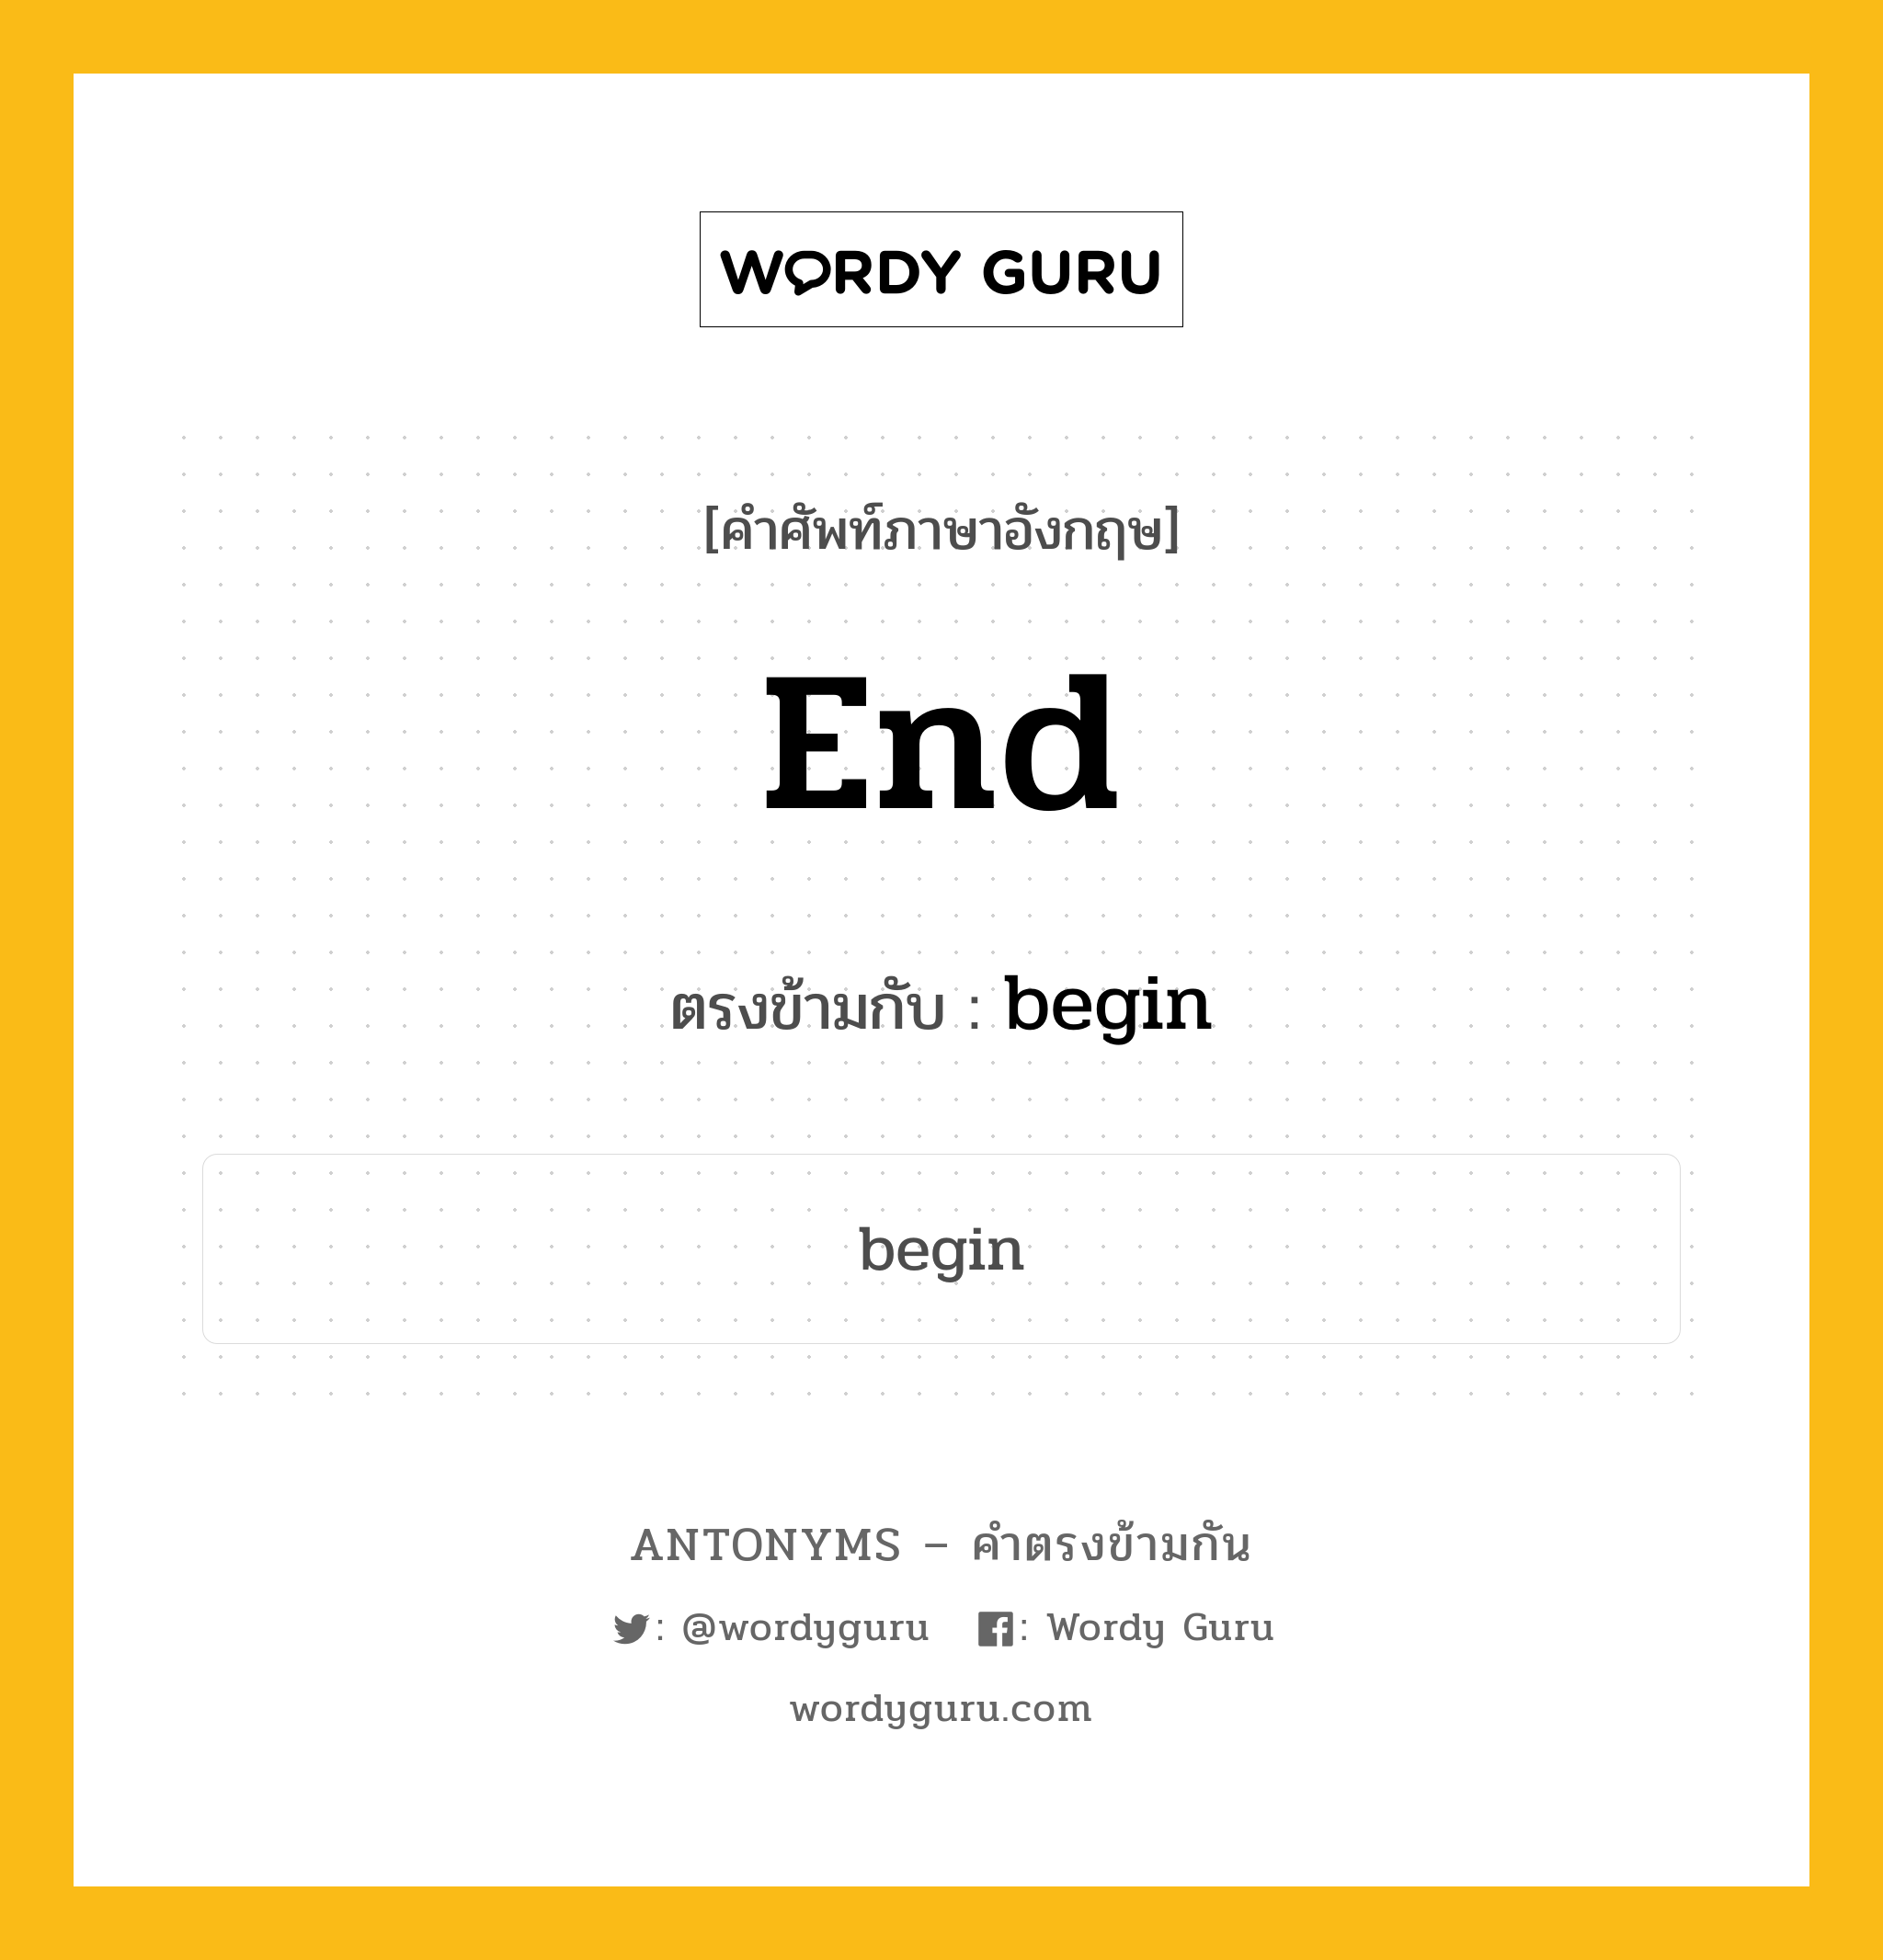 end เป็นคำตรงข้ามกับคำไหนบ้าง?, คำศัพท์ภาษาอังกฤษ end ตรงข้ามกับ begin หมวด begin